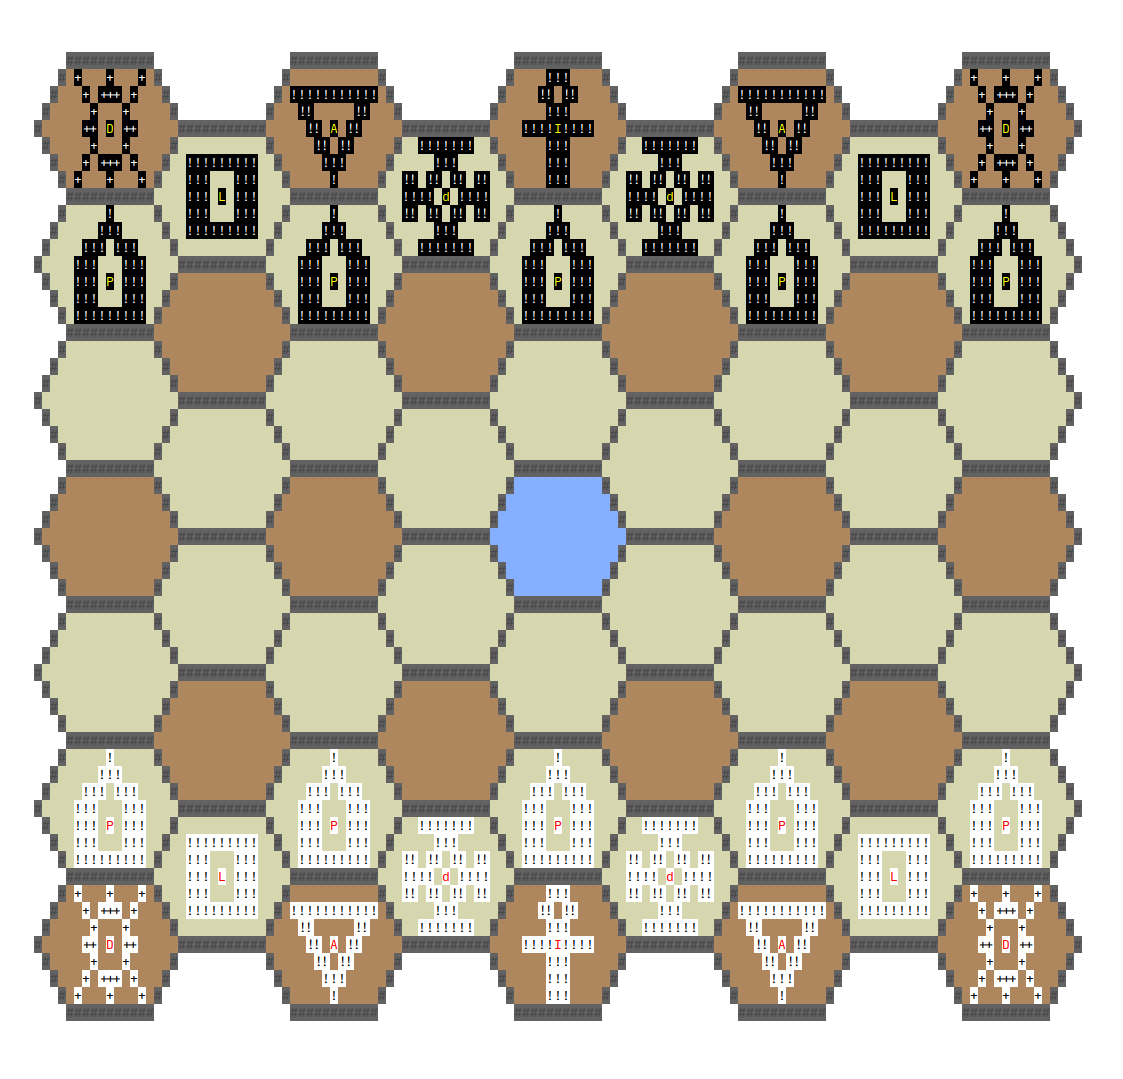 4 угла хорошо, а 6 лучше: гексагональные шахматы в консоли и с ботом - 1